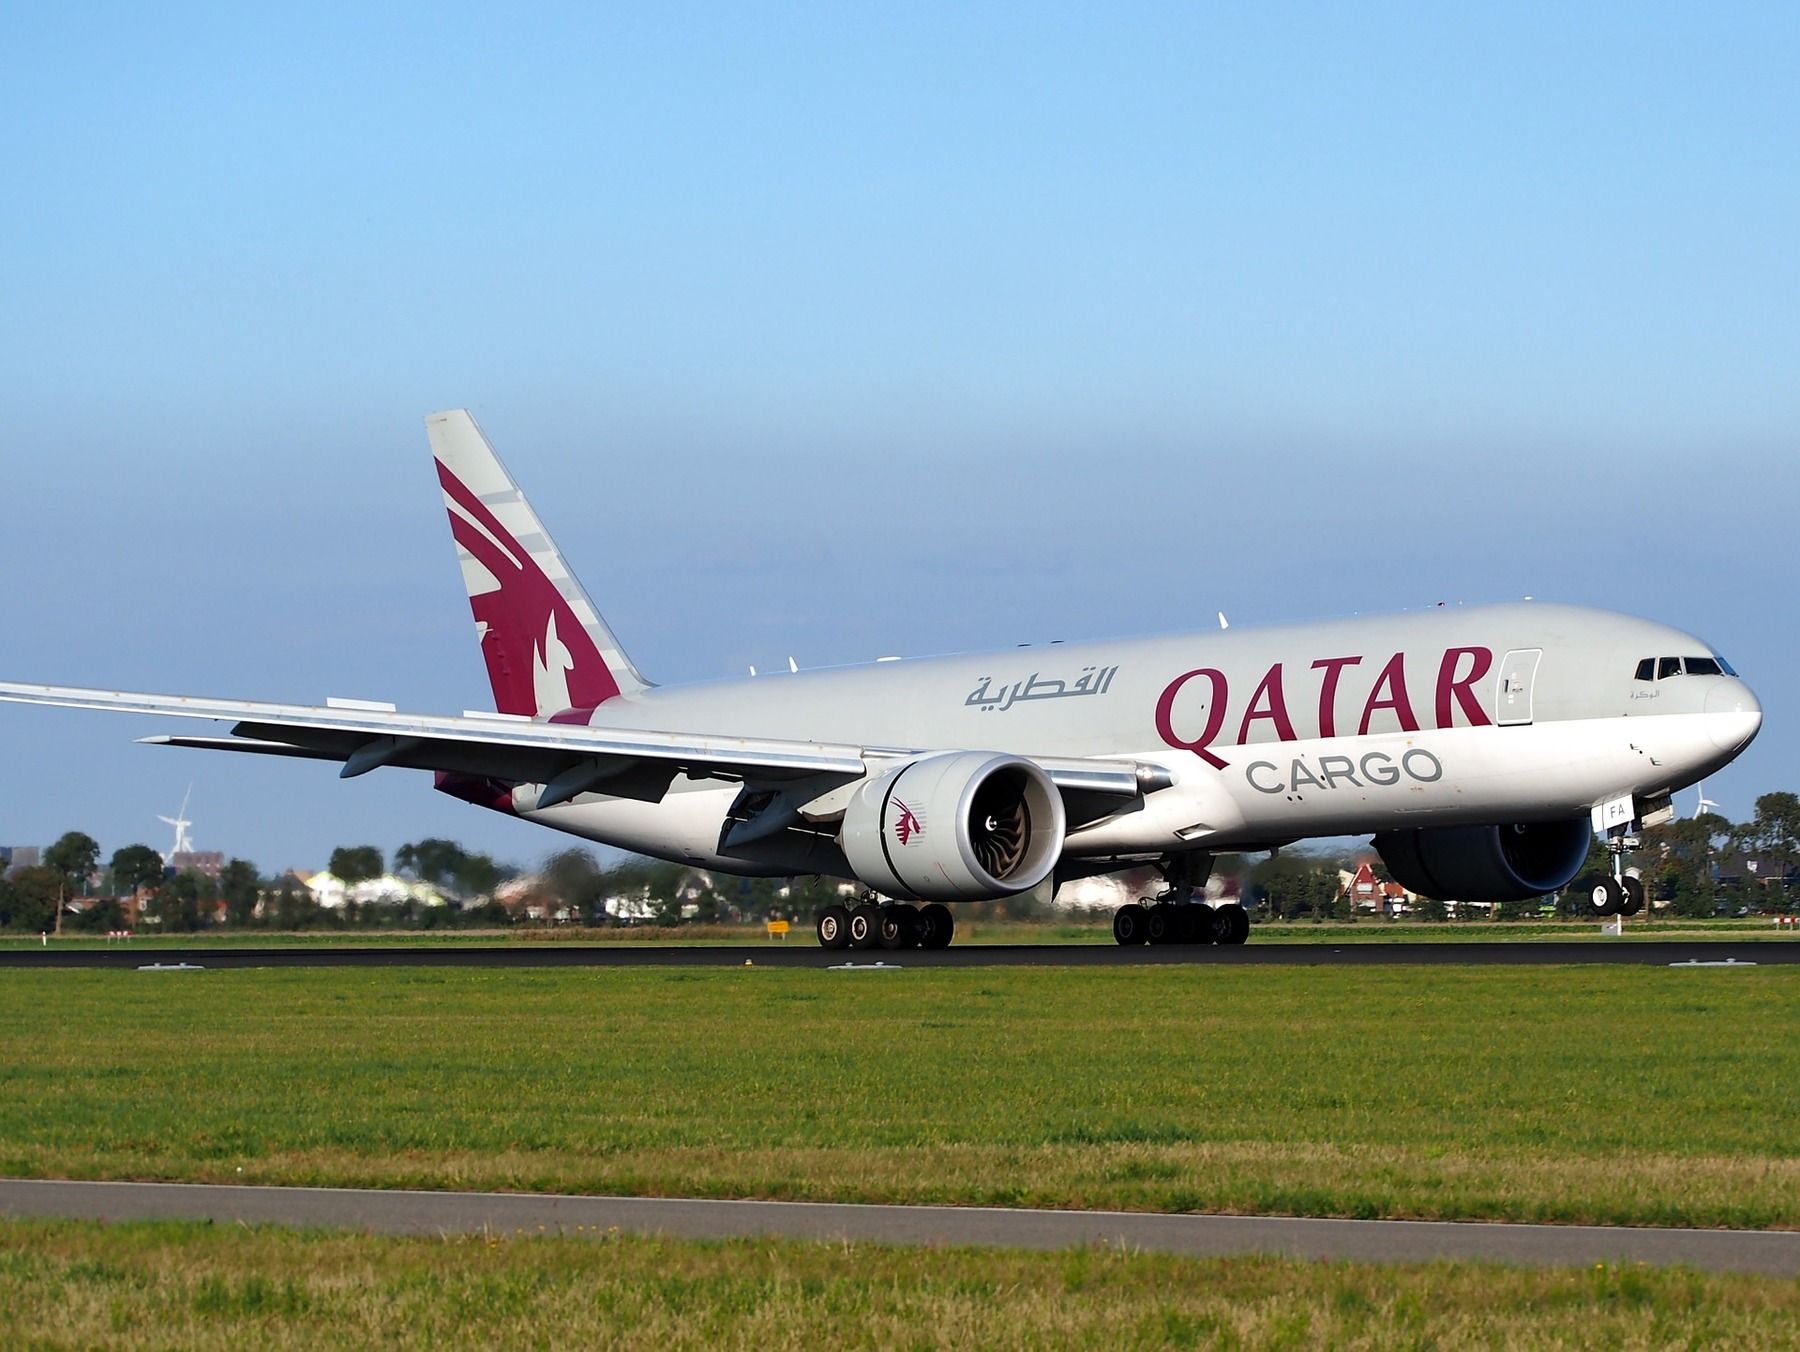 Qatar Airways blockas - stängt luftrum i gulf-området